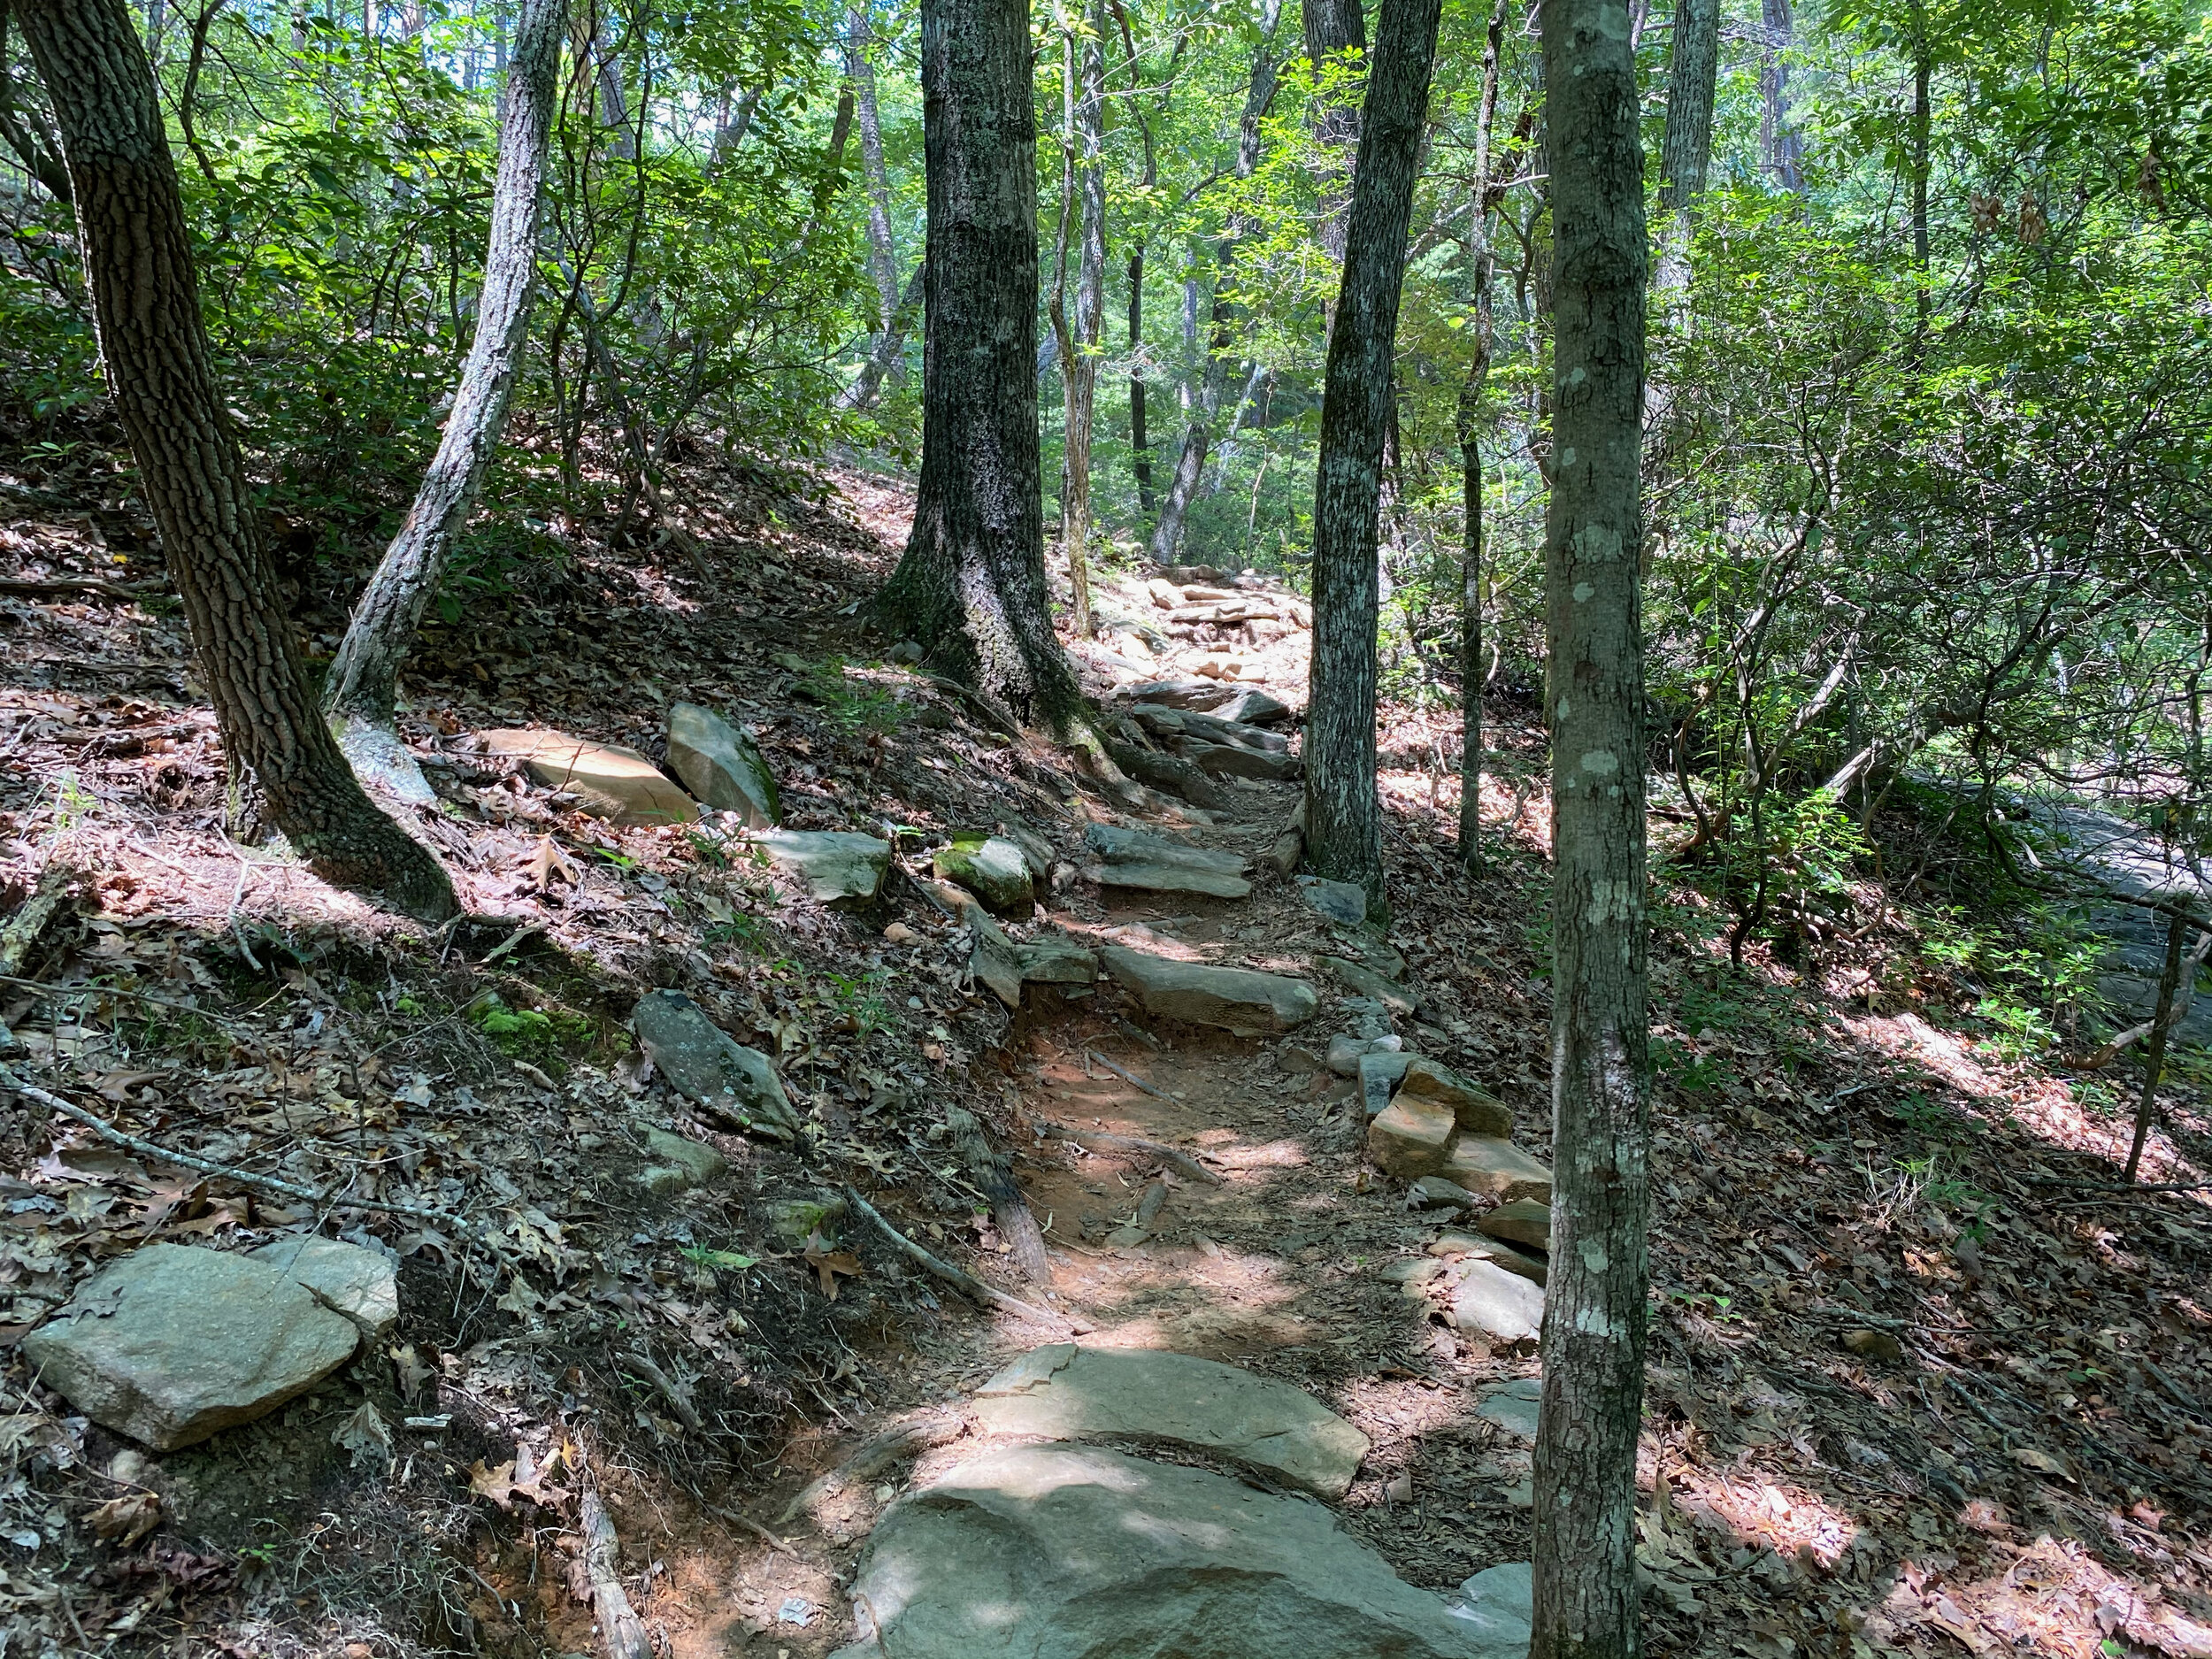 Upper Falls Trail